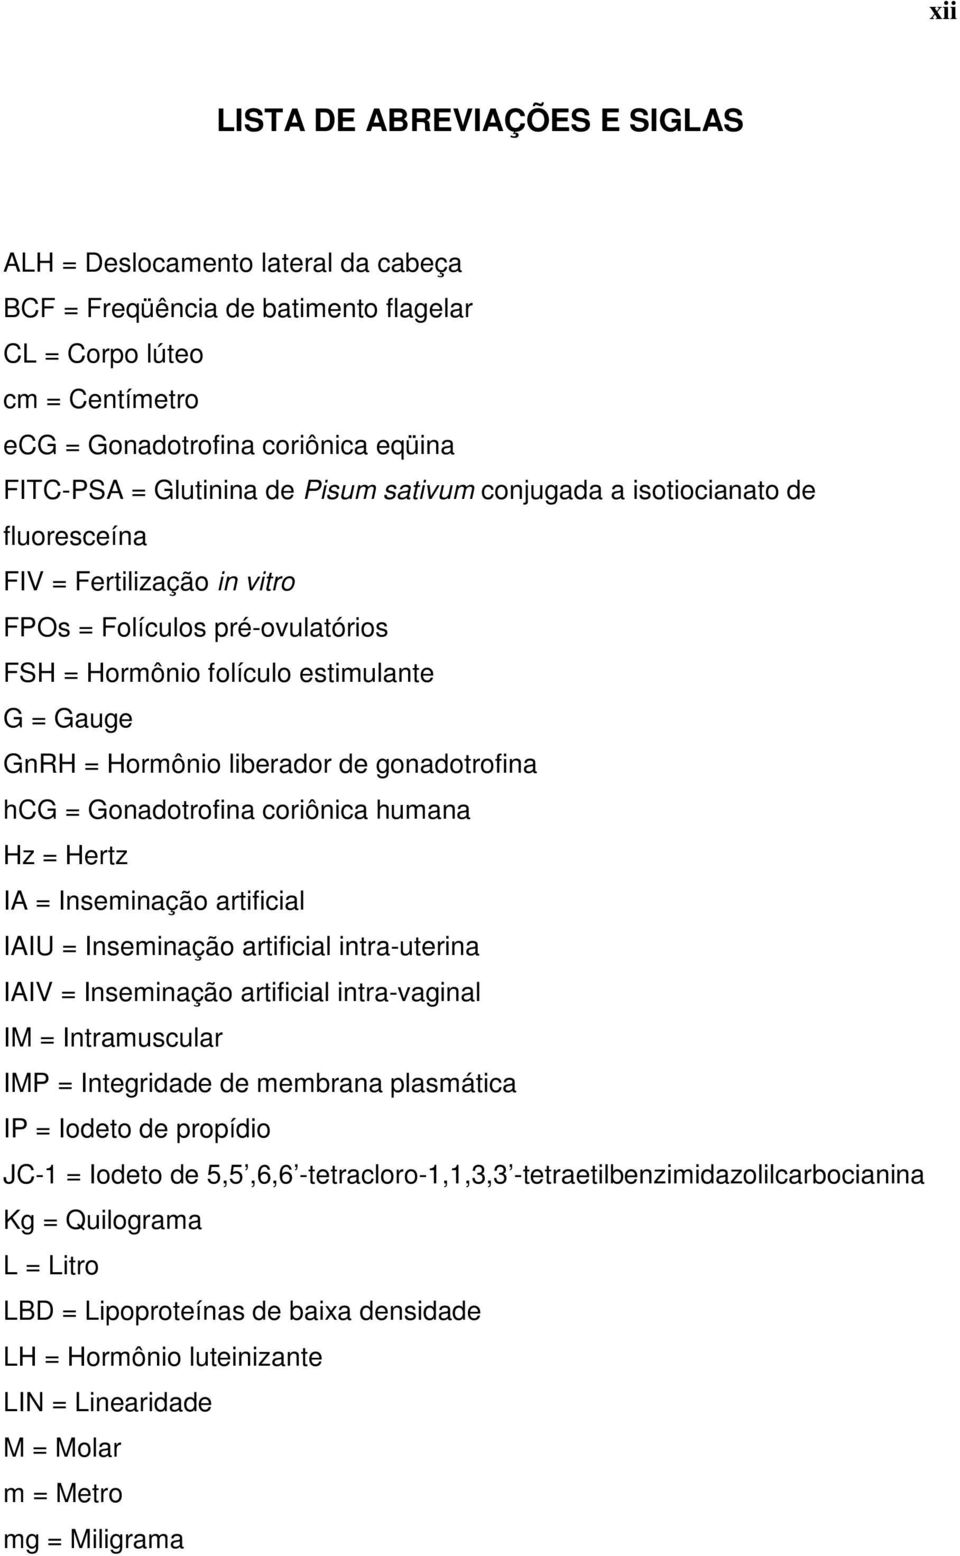 liberador de gonadotrofina hcg = Gonadotrofina coriônica humana Hz = Hertz IA = Inseminação artificial IAIU = Inseminação artificial intra-uterina IAIV = Inseminação artificial intra-vaginal IM =